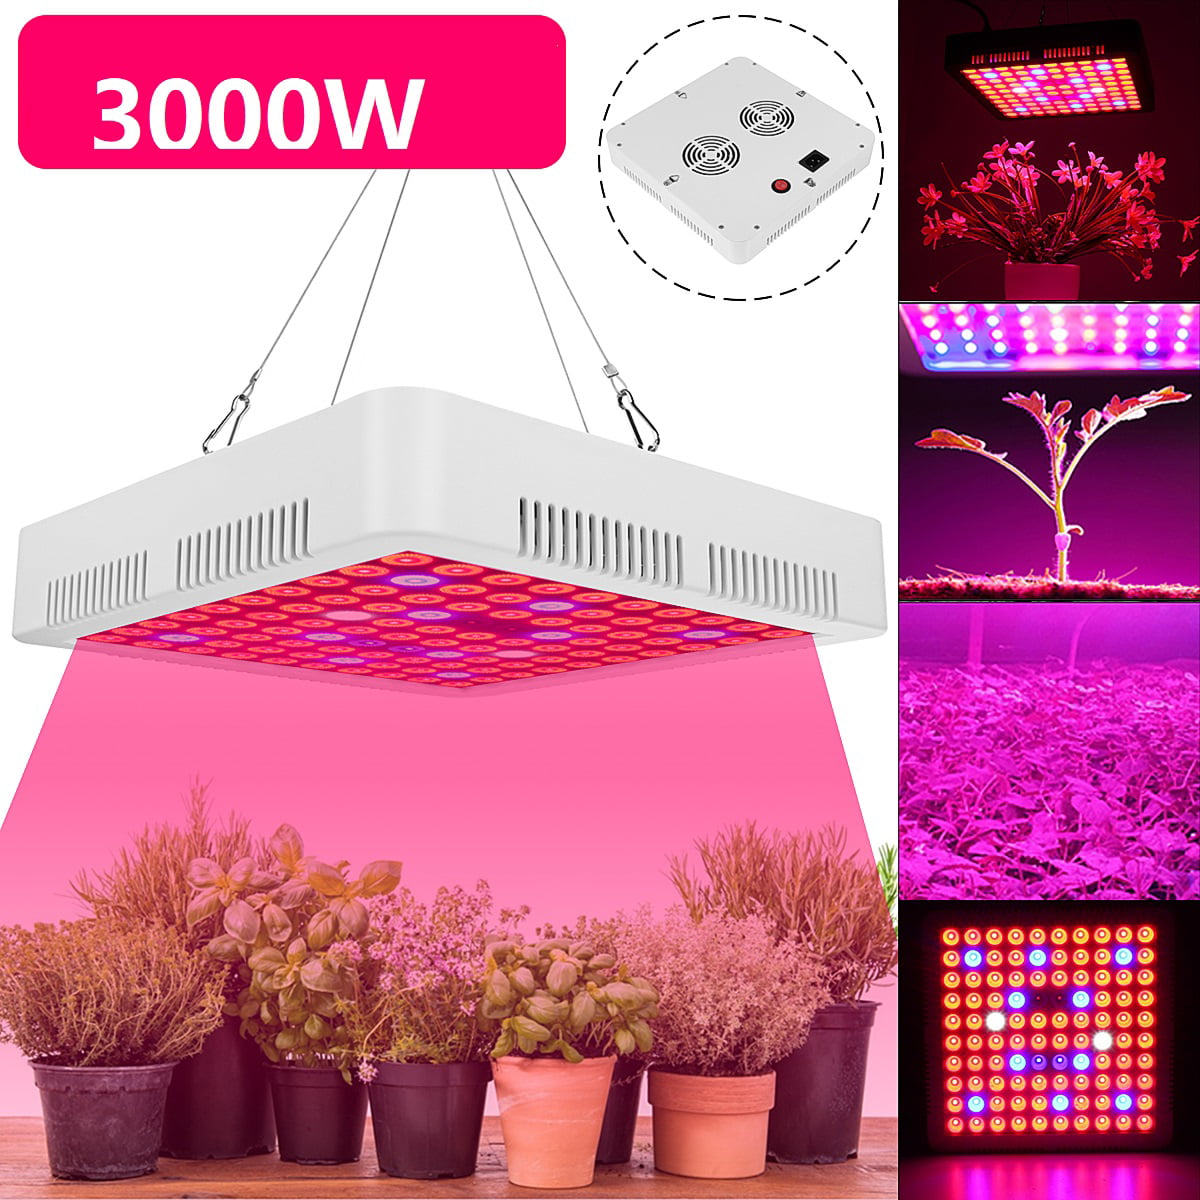 2000W LED W/ 2COB Full Spectrum LED Grow Light Indoor Plants Veg Flower Panel US 